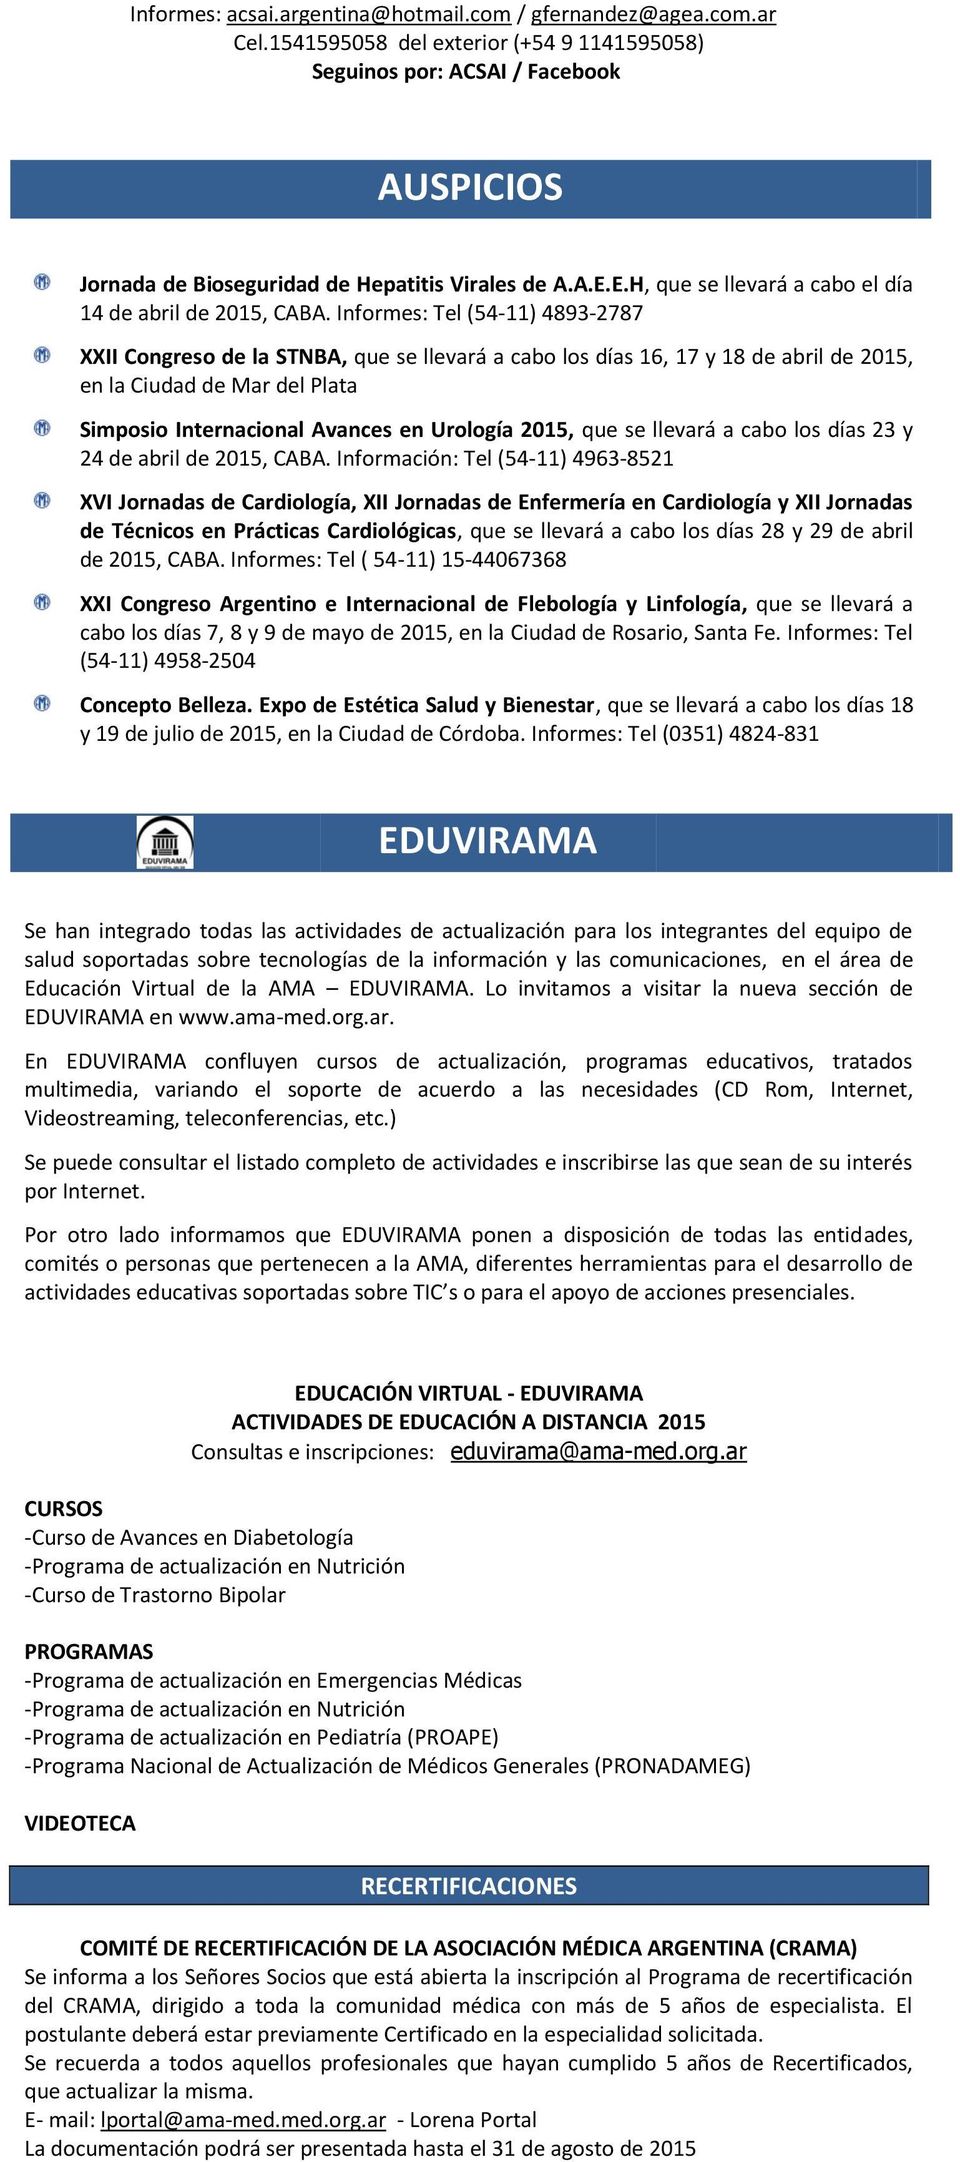 Informes: Tel (54-11) 4893-2787 XXII Congreso de la STNBA, que se llevará a cabo los días 16, 17 y 18 de abril de 2015, en la Ciudad de Mar del Plata Simposio Internacional Avances en Urología 2015,